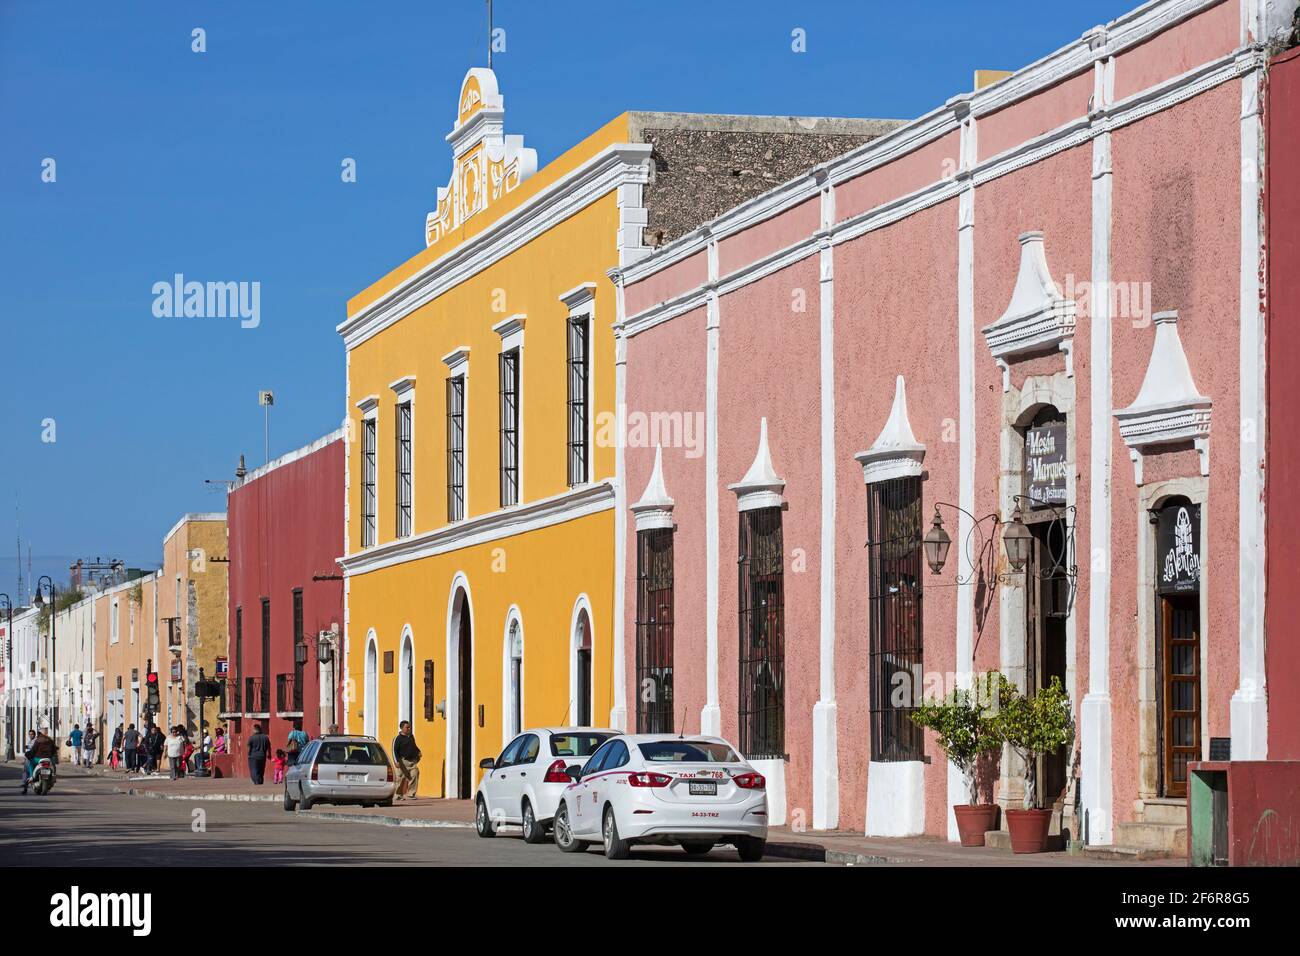 Rue avec des maisons colorées et hôtel-restaurant dans la ville Valladolid à Yucatán, Mexique Banque D'Images